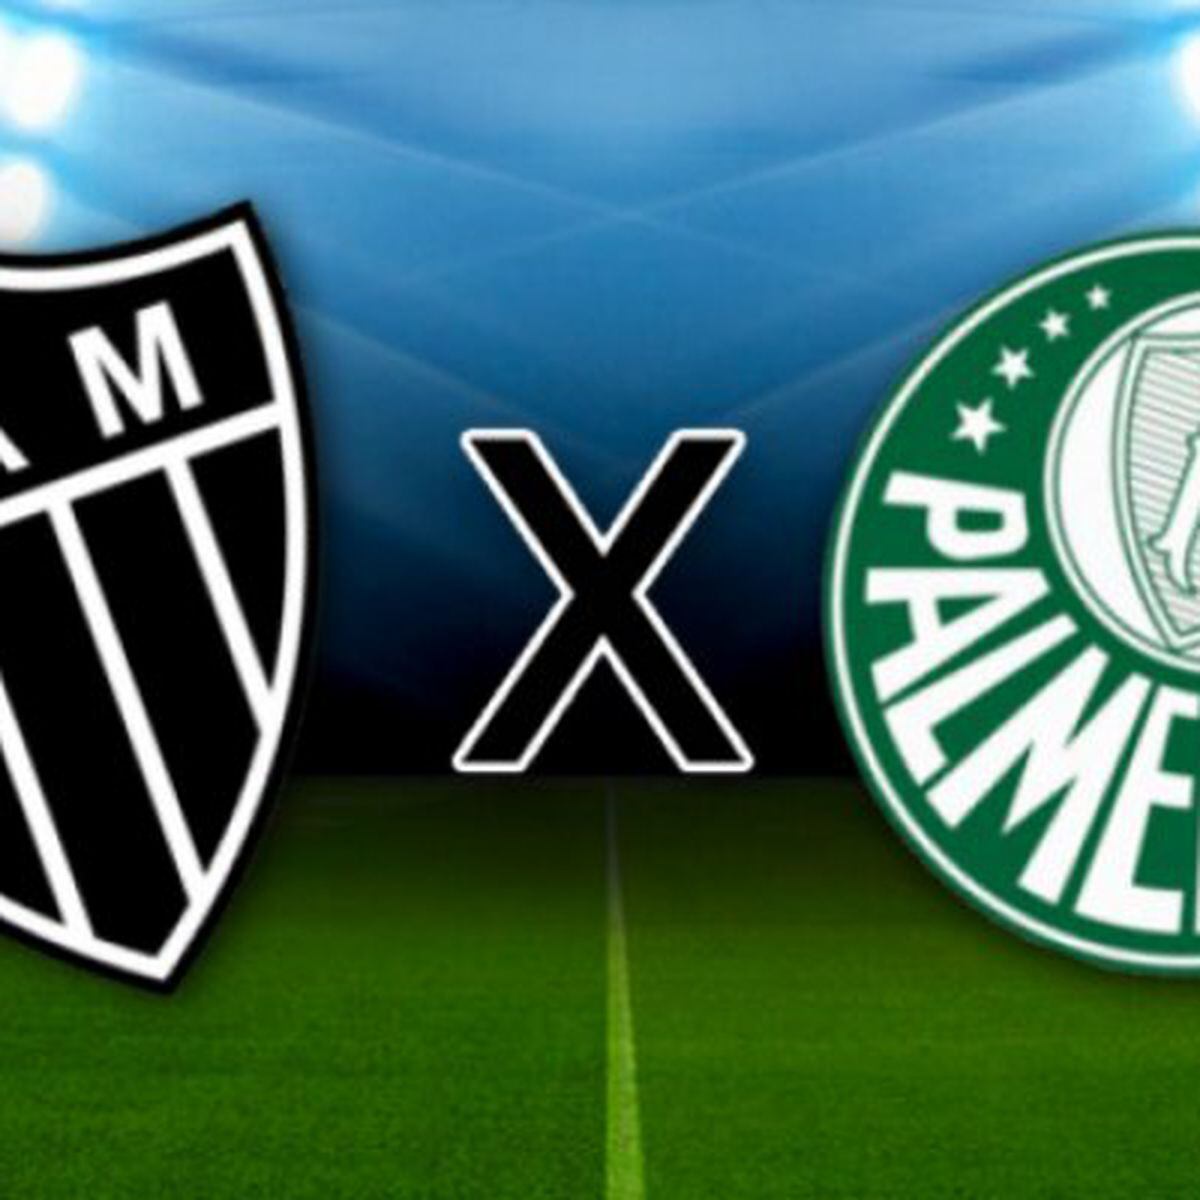 Onde assistir o jogo do Palmeiras x Atlético-MG hoje, quarta-feira